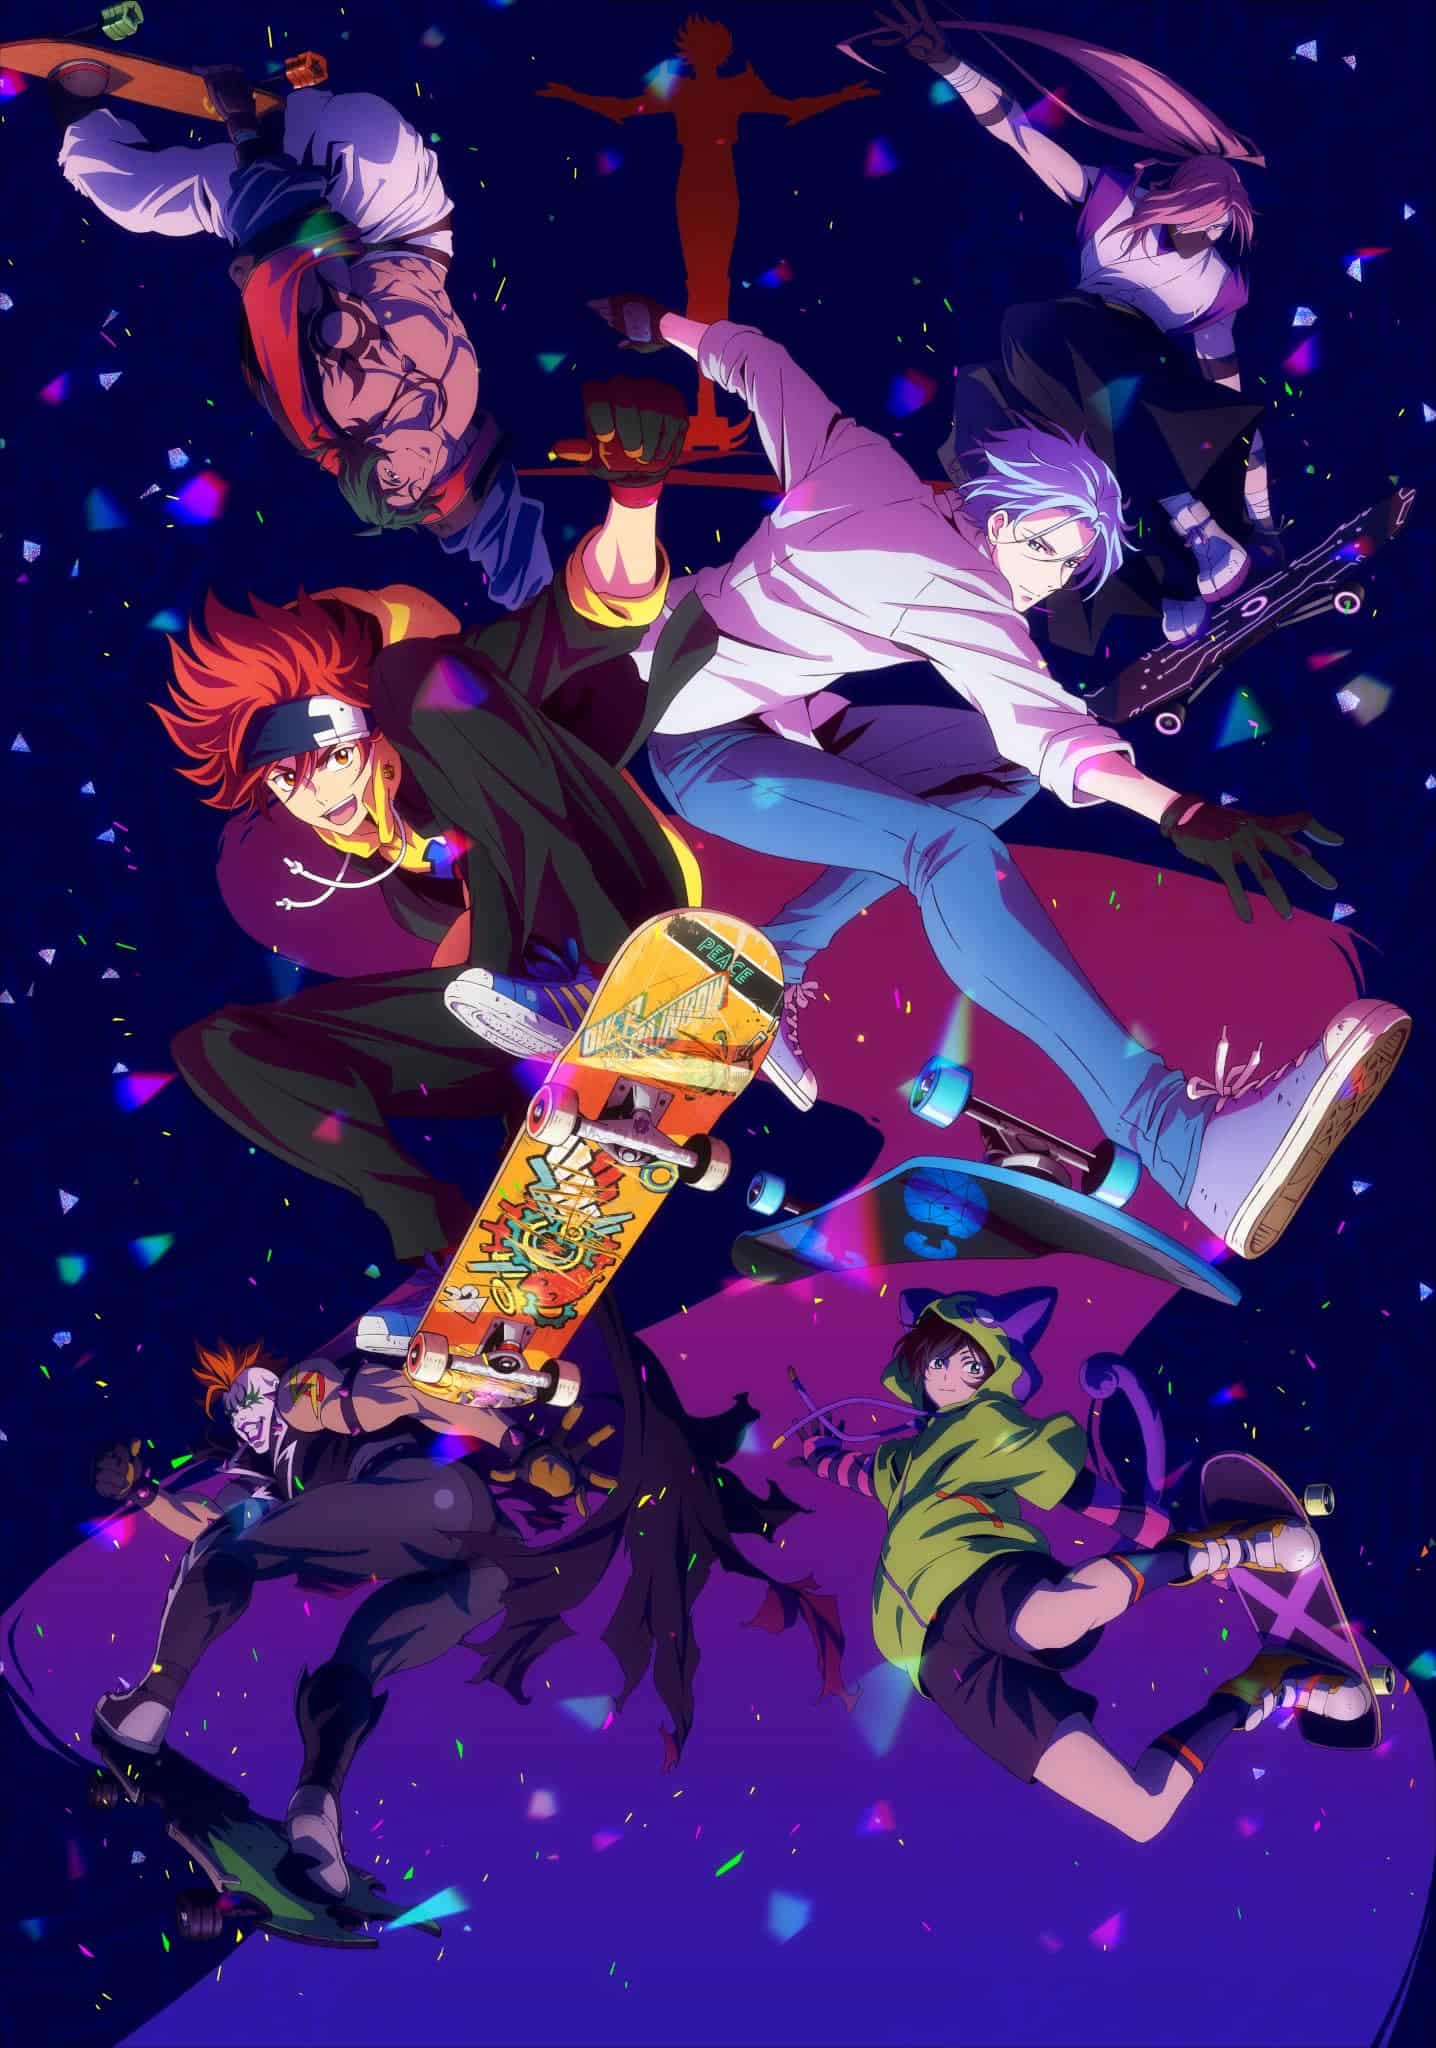 Annonce de SK8 The Infinity parmi les animes de hiver 2021